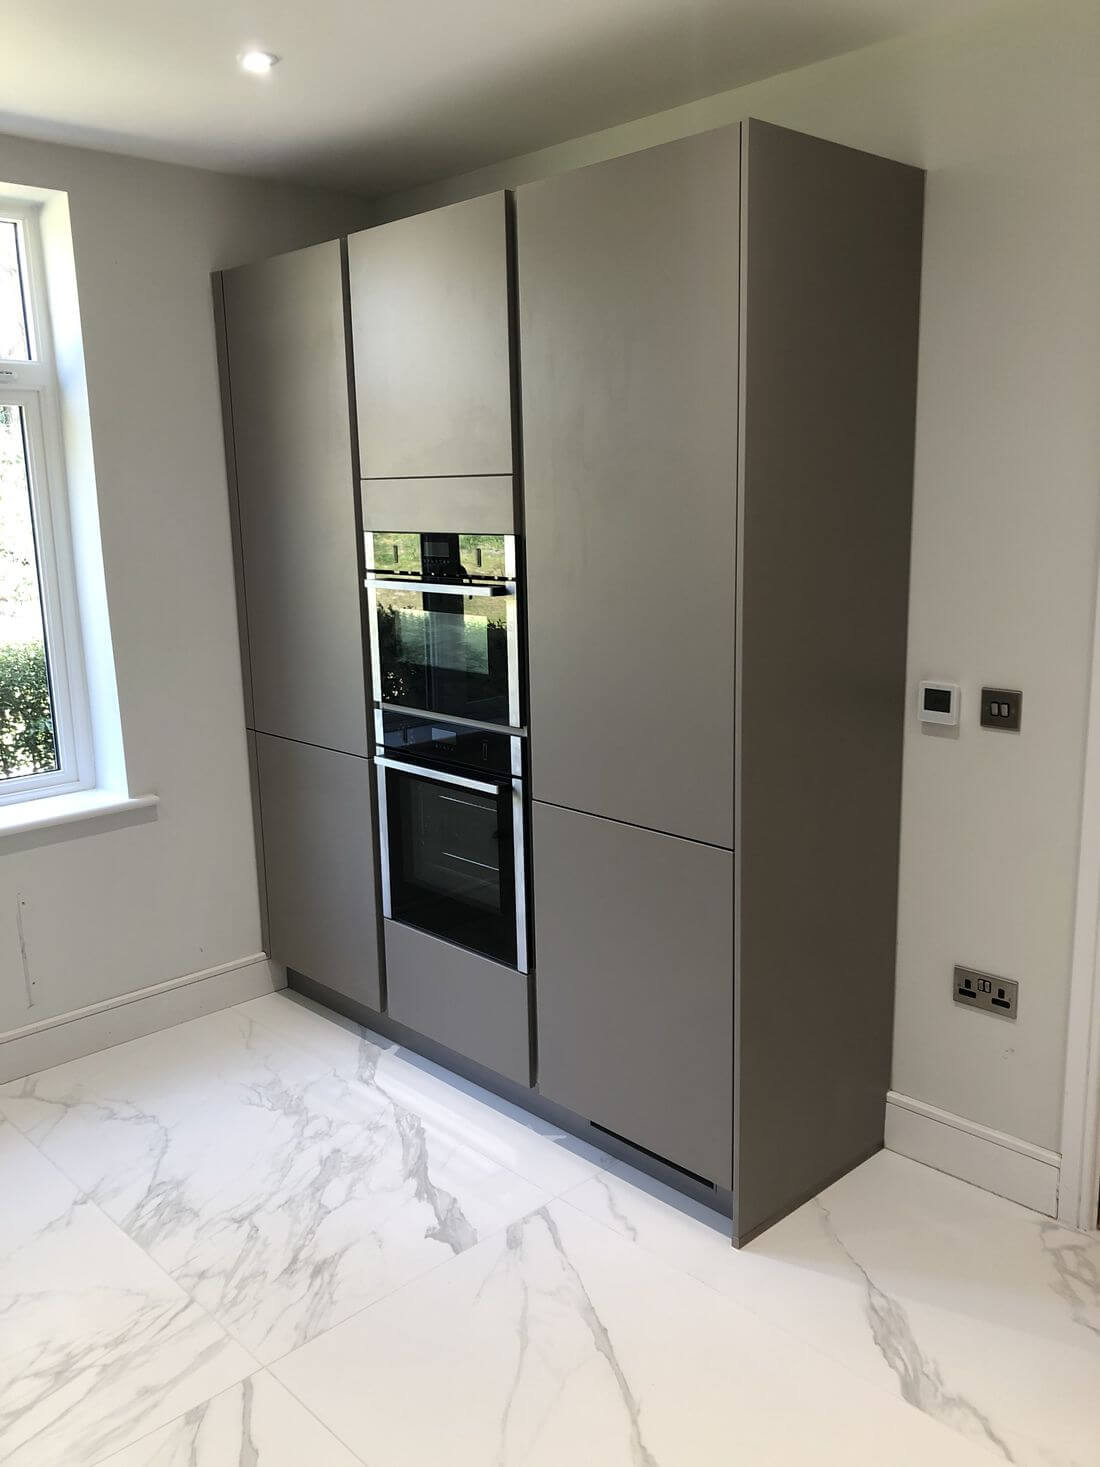 Full height kitchen storage cupboards